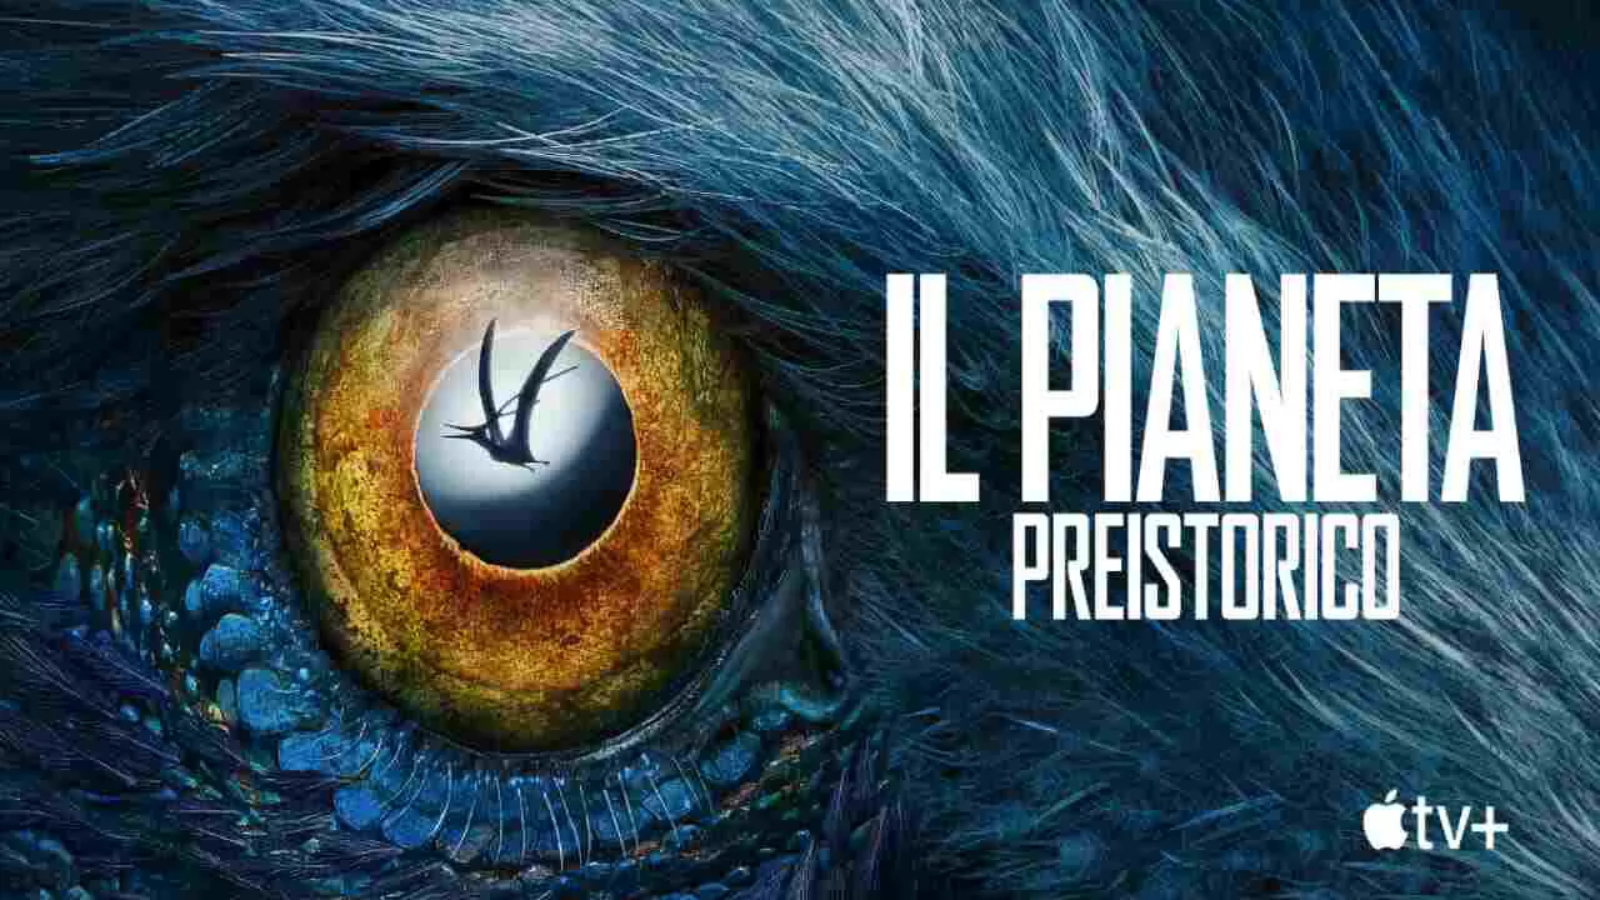 Il Pianeta Preistorico 2: il trailer italiano e la data di uscita della docu-serie (VIDEO)